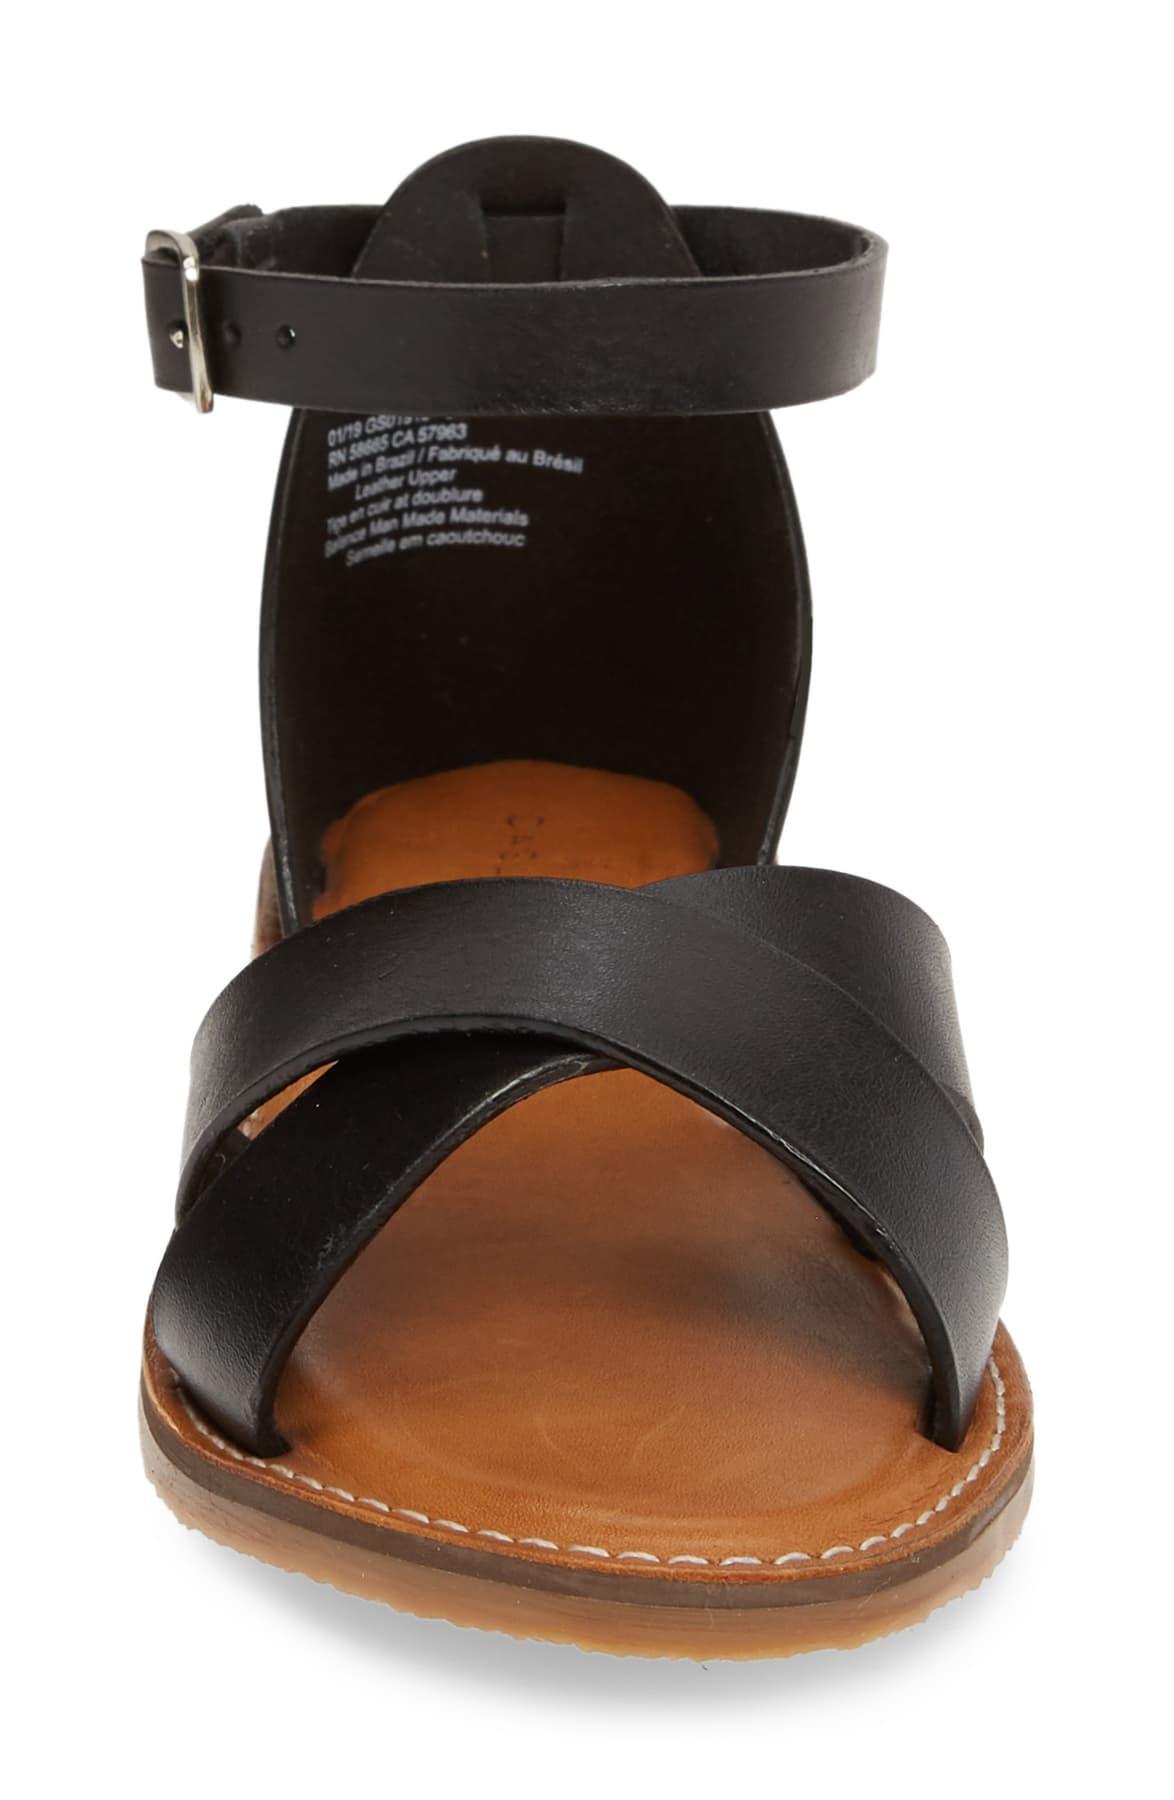 caslon oliver sandal